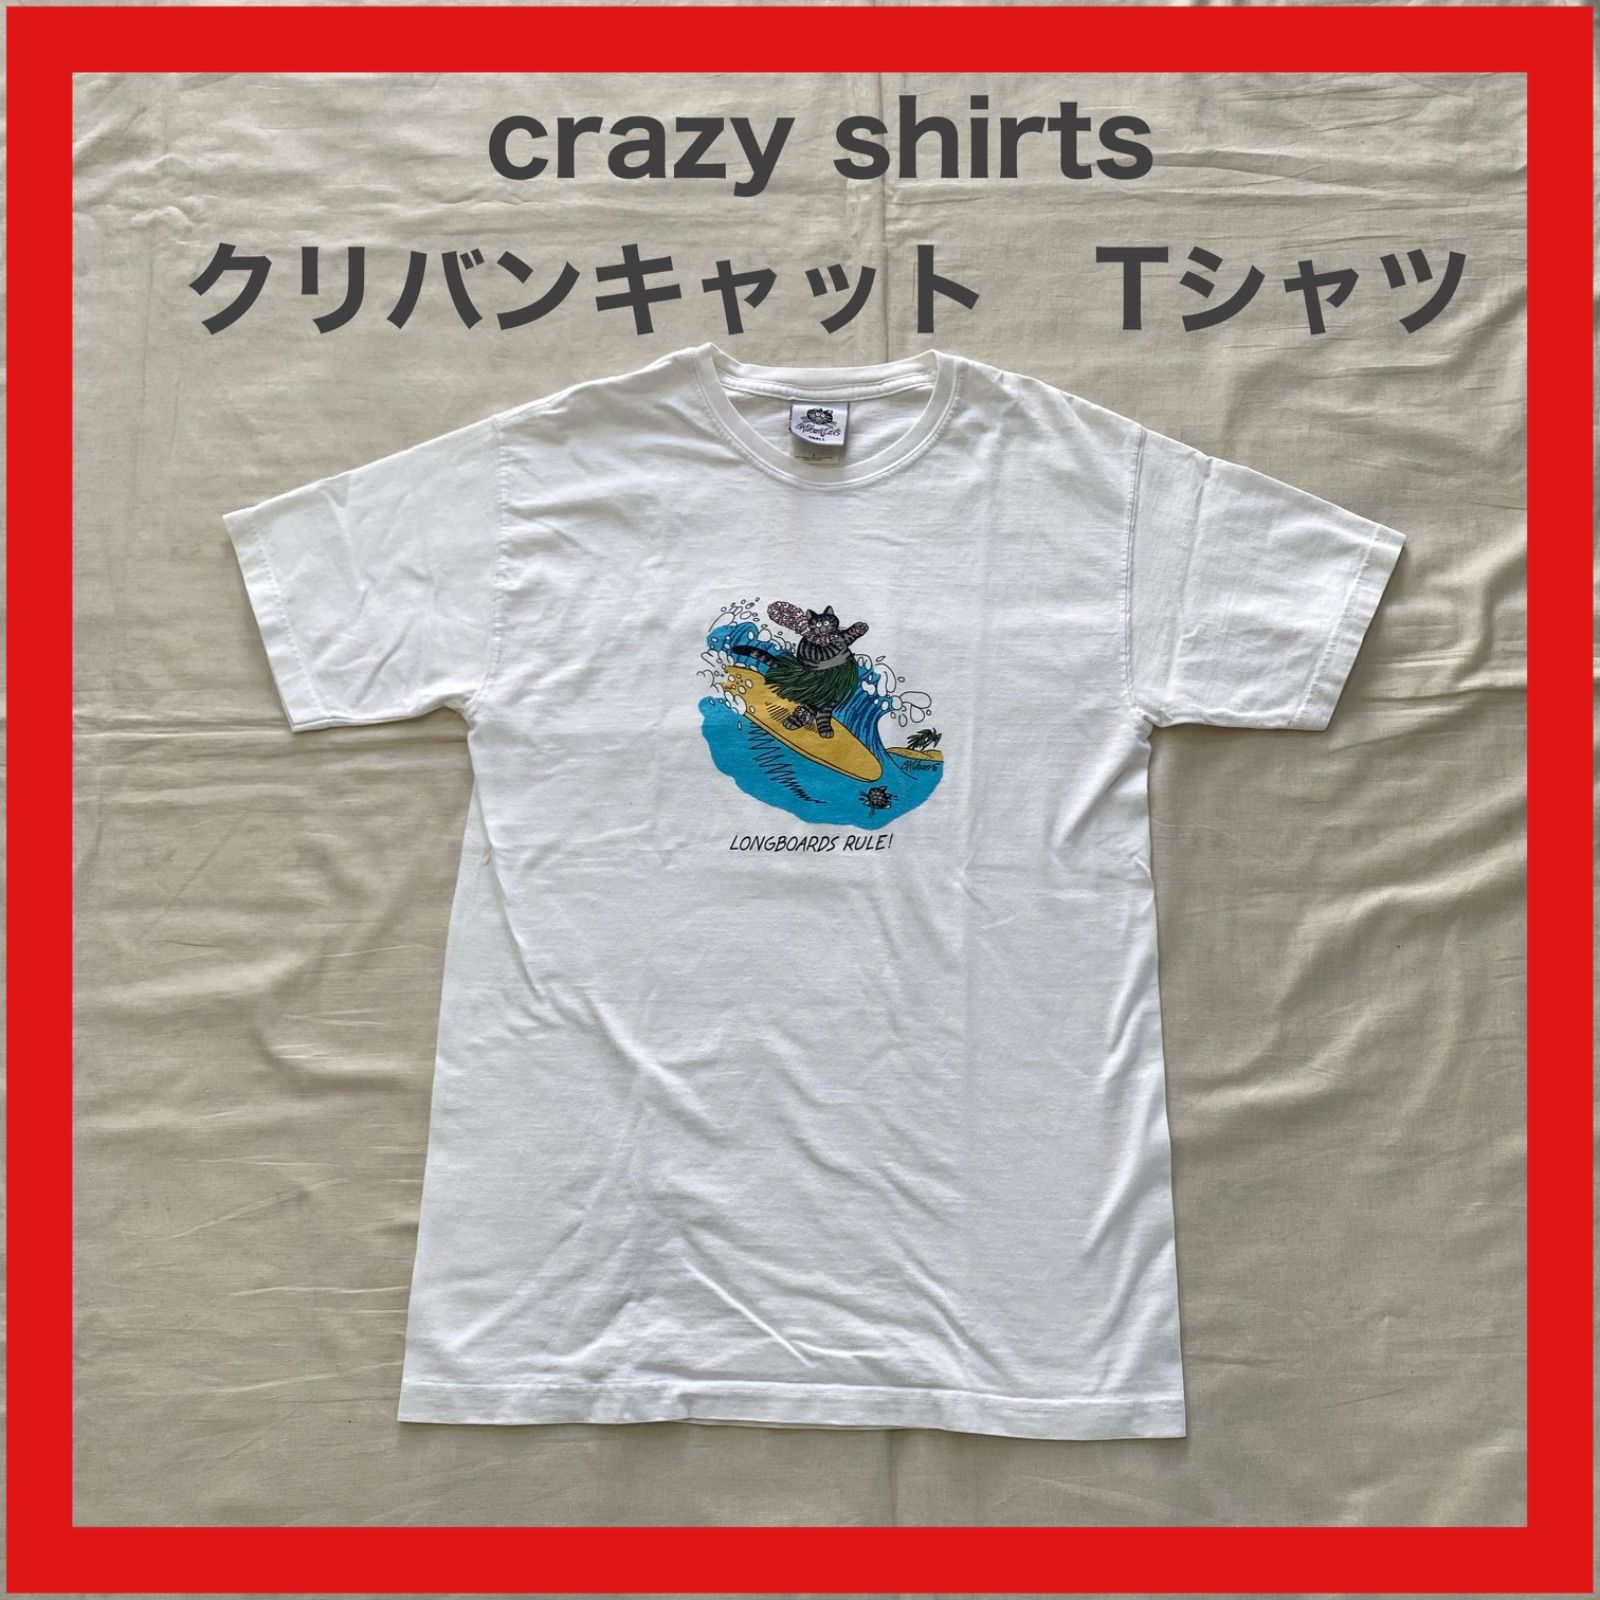 crazyshirts クレイジーシャツ クリバンキャット Tシャツ カットソー 